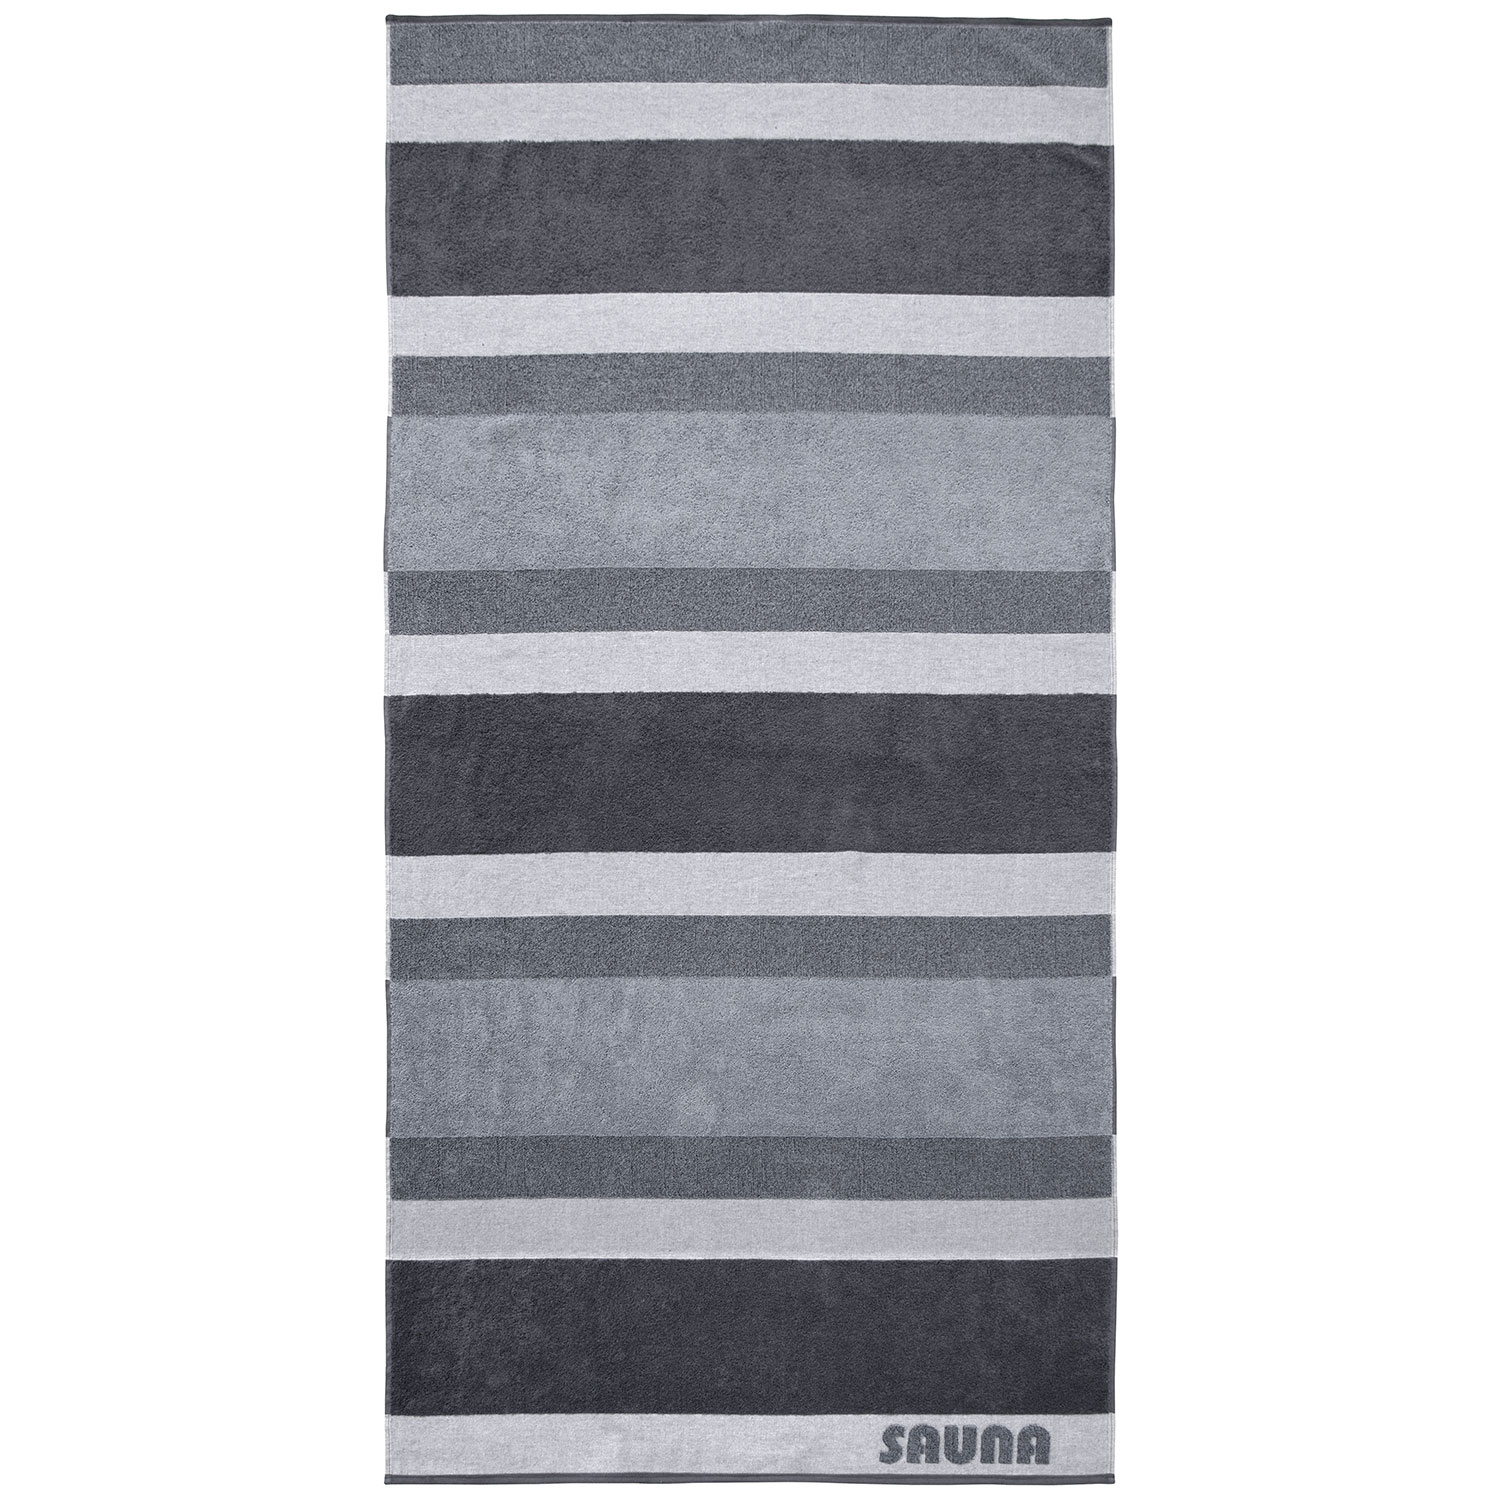 Baumwolle, Sauna, Stripe, Streifen, blau, silber, grau | Dyckhoff GmbH